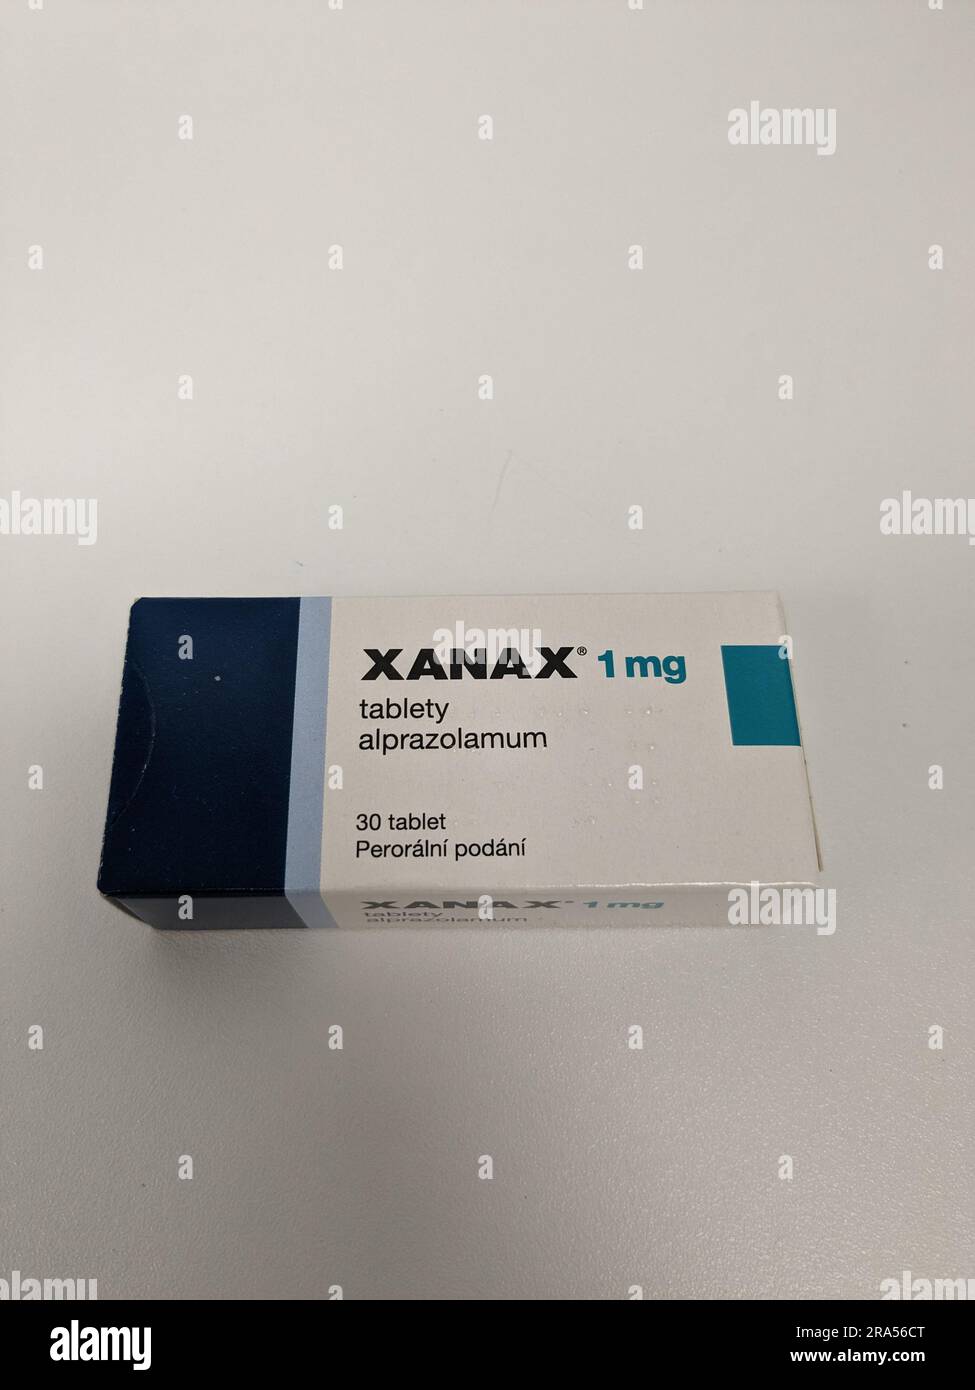 Pilules Xanax avec la substance active Alprazolam, anxiolytiques antidépresseurs médicaments de thérapie, est un médicament populaire à abuser et a la valeur de rue Pfizer Banque D'Images